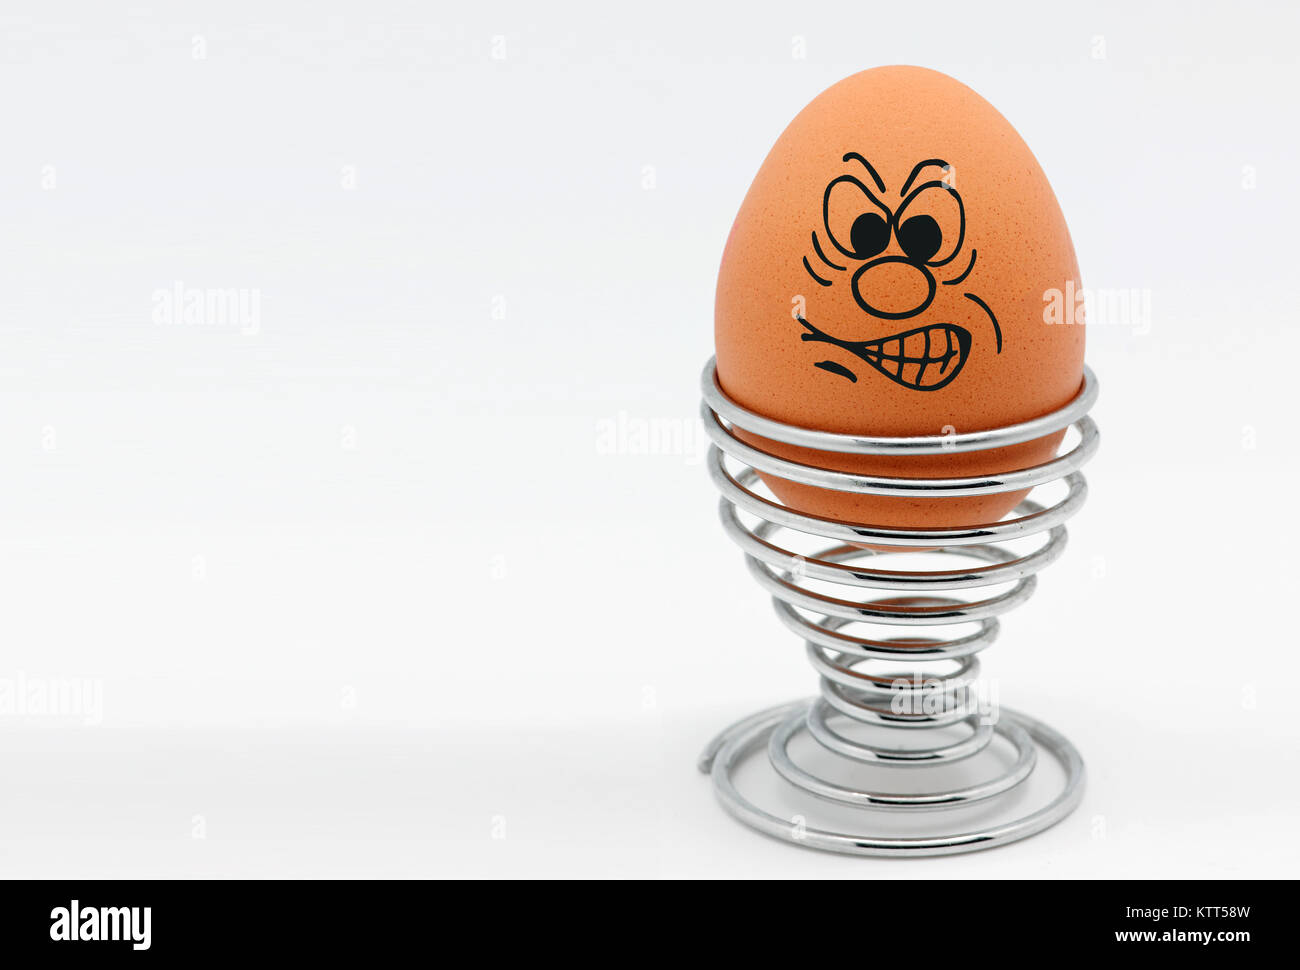 Ein Ei in einem Eierbecher mit einem wütenden Gesicht Stockfoto